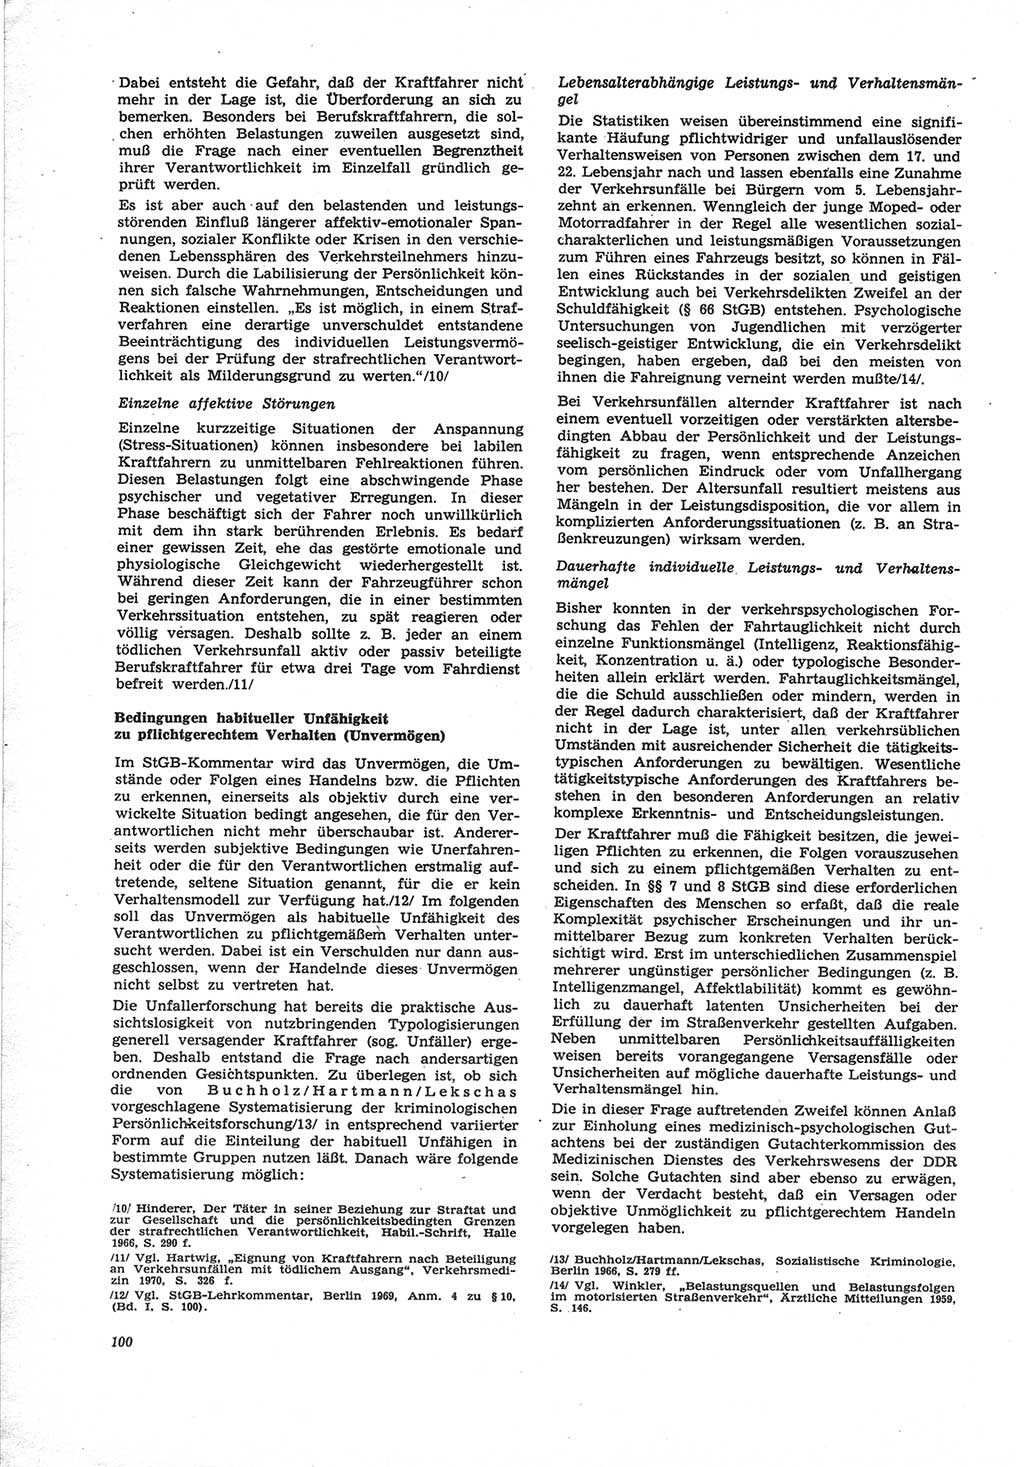 Neue Justiz (NJ), Zeitschrift für Recht und Rechtswissenschaft [Deutsche Demokratische Republik (DDR)], 25. Jahrgang 1971, Seite 100 (NJ DDR 1971, S. 100)